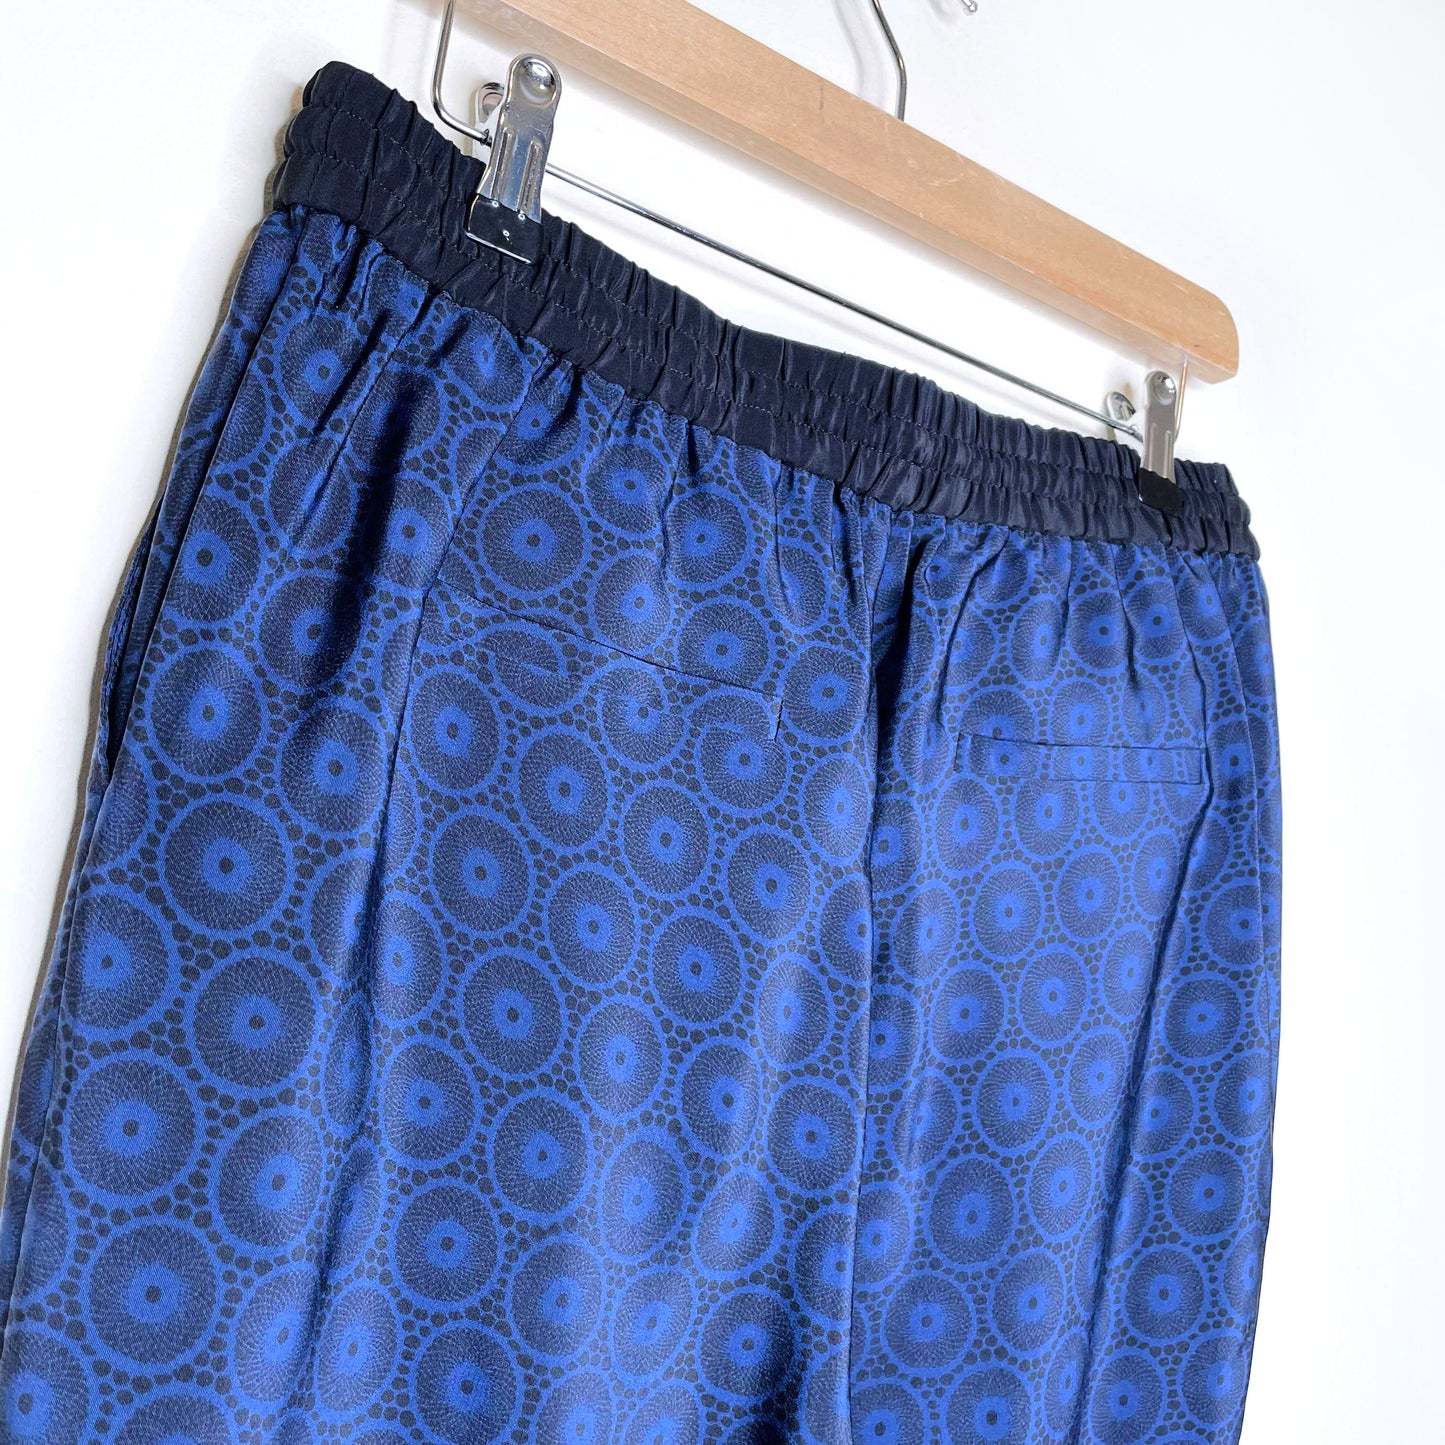 tibi blue black patterned high rise silk drawstring joggers - size 6